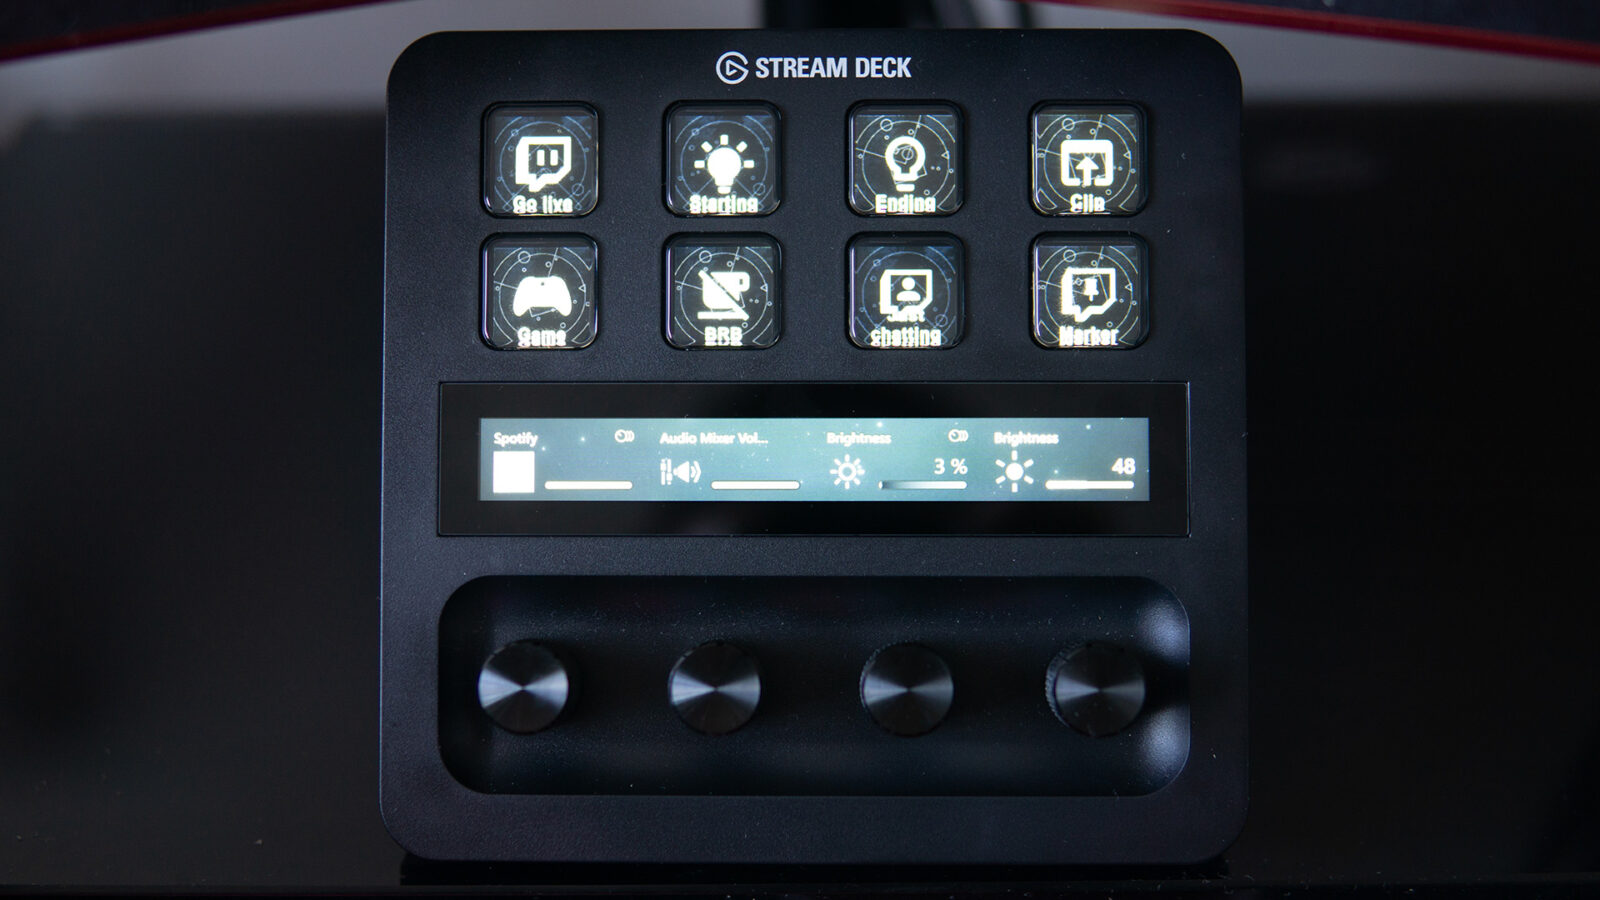 Elgato Stream Deck + レビュー: 便利な触覚、まあまあのサポート